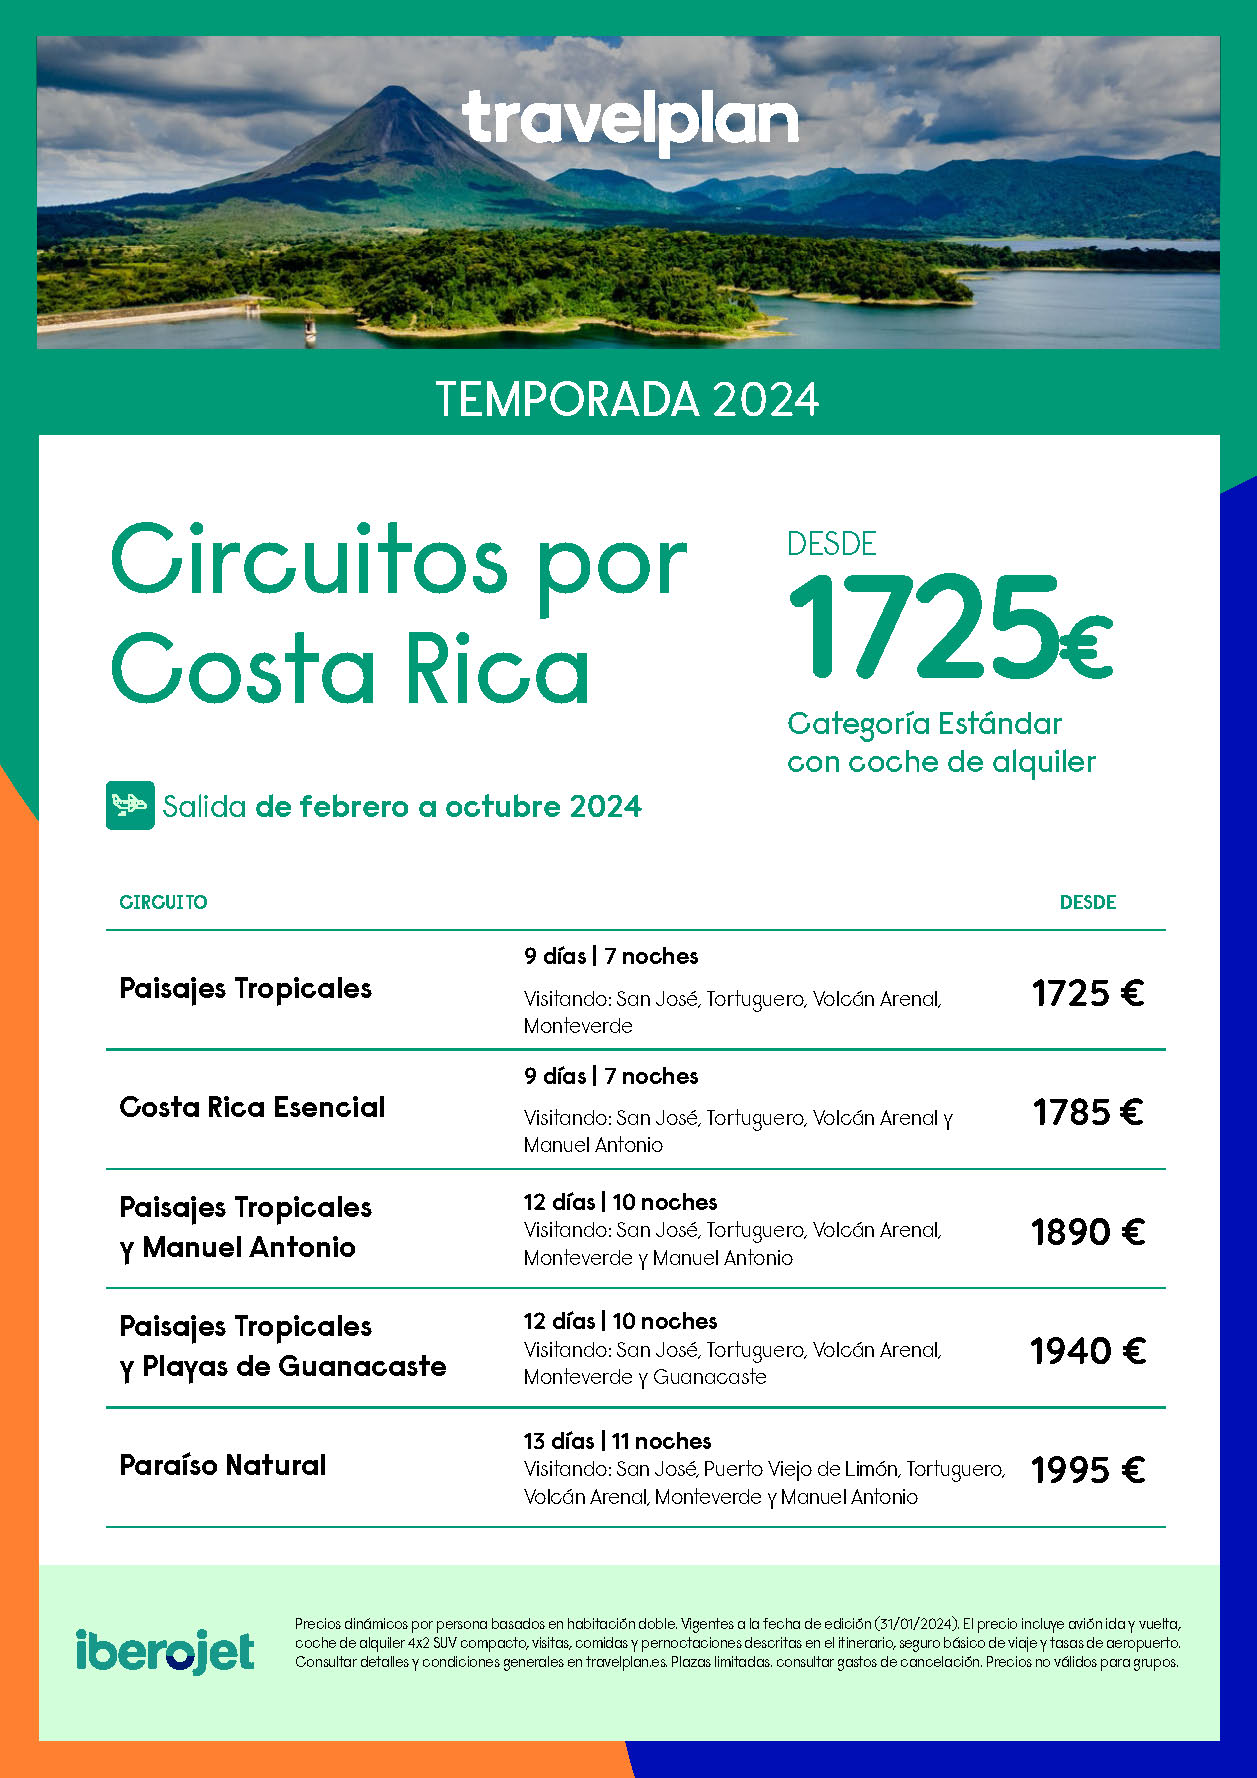 Oferta Travelplan 2024 Circuitos Costa Rica Fly and Drive 9 a 13 dias salidas febrero a octubre vuelo directo desde Madrid